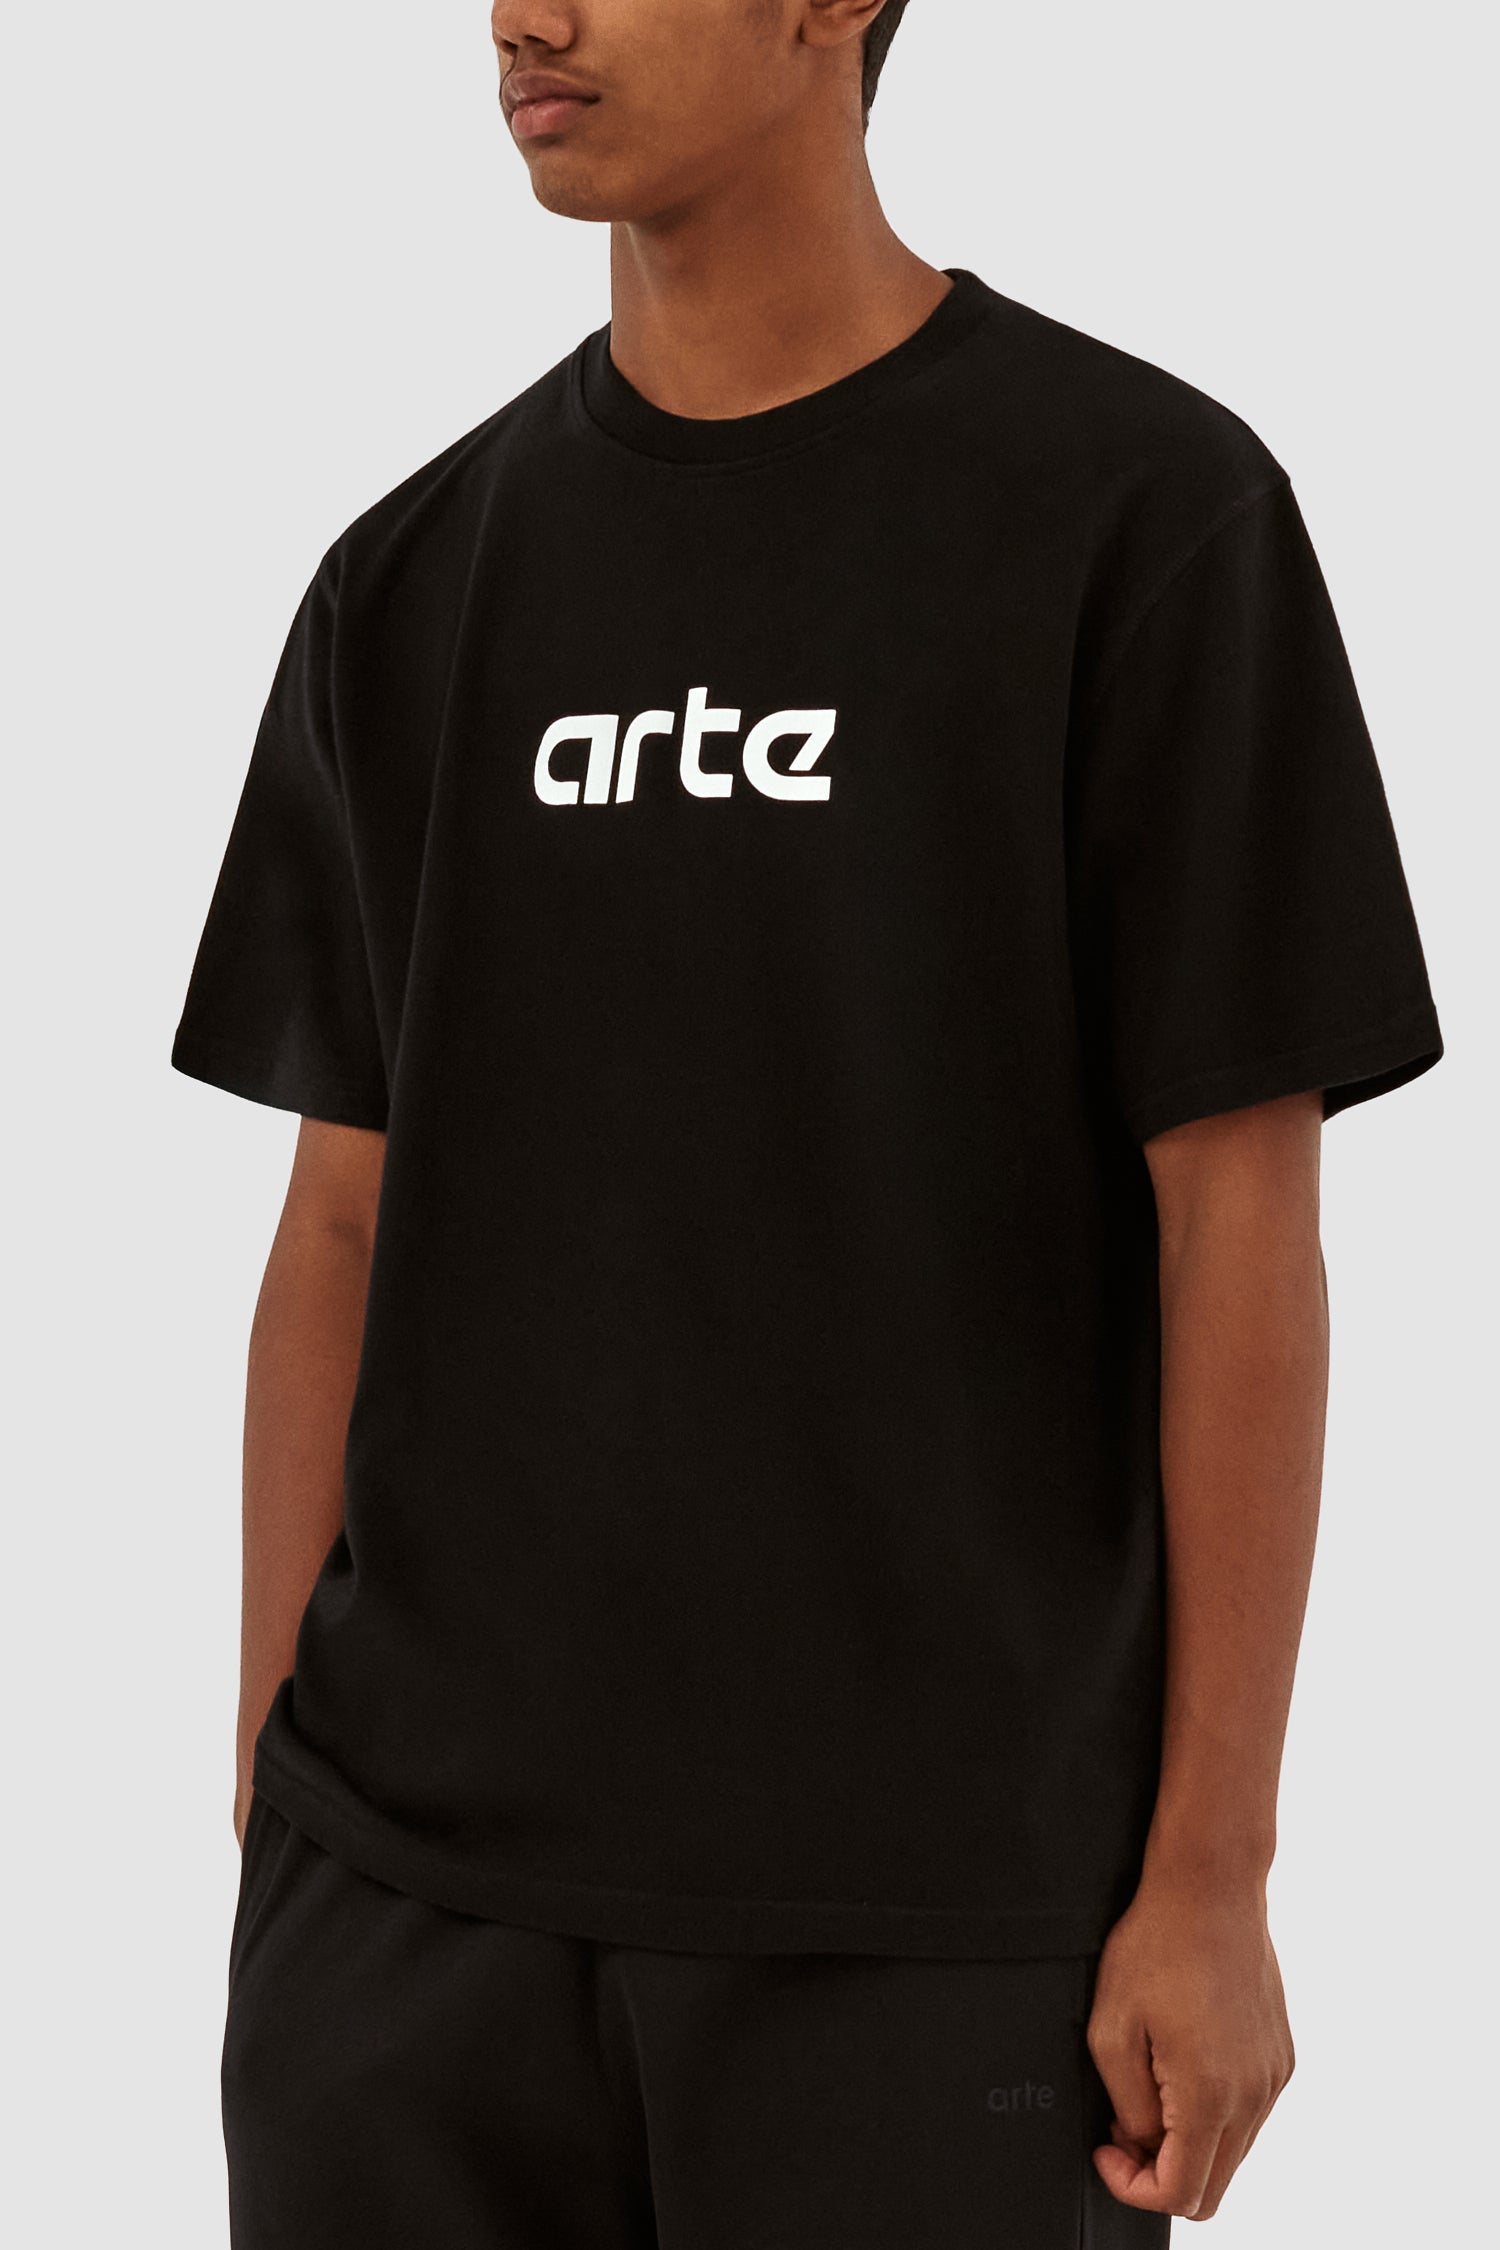 Teo Arte T-shirt - Noir